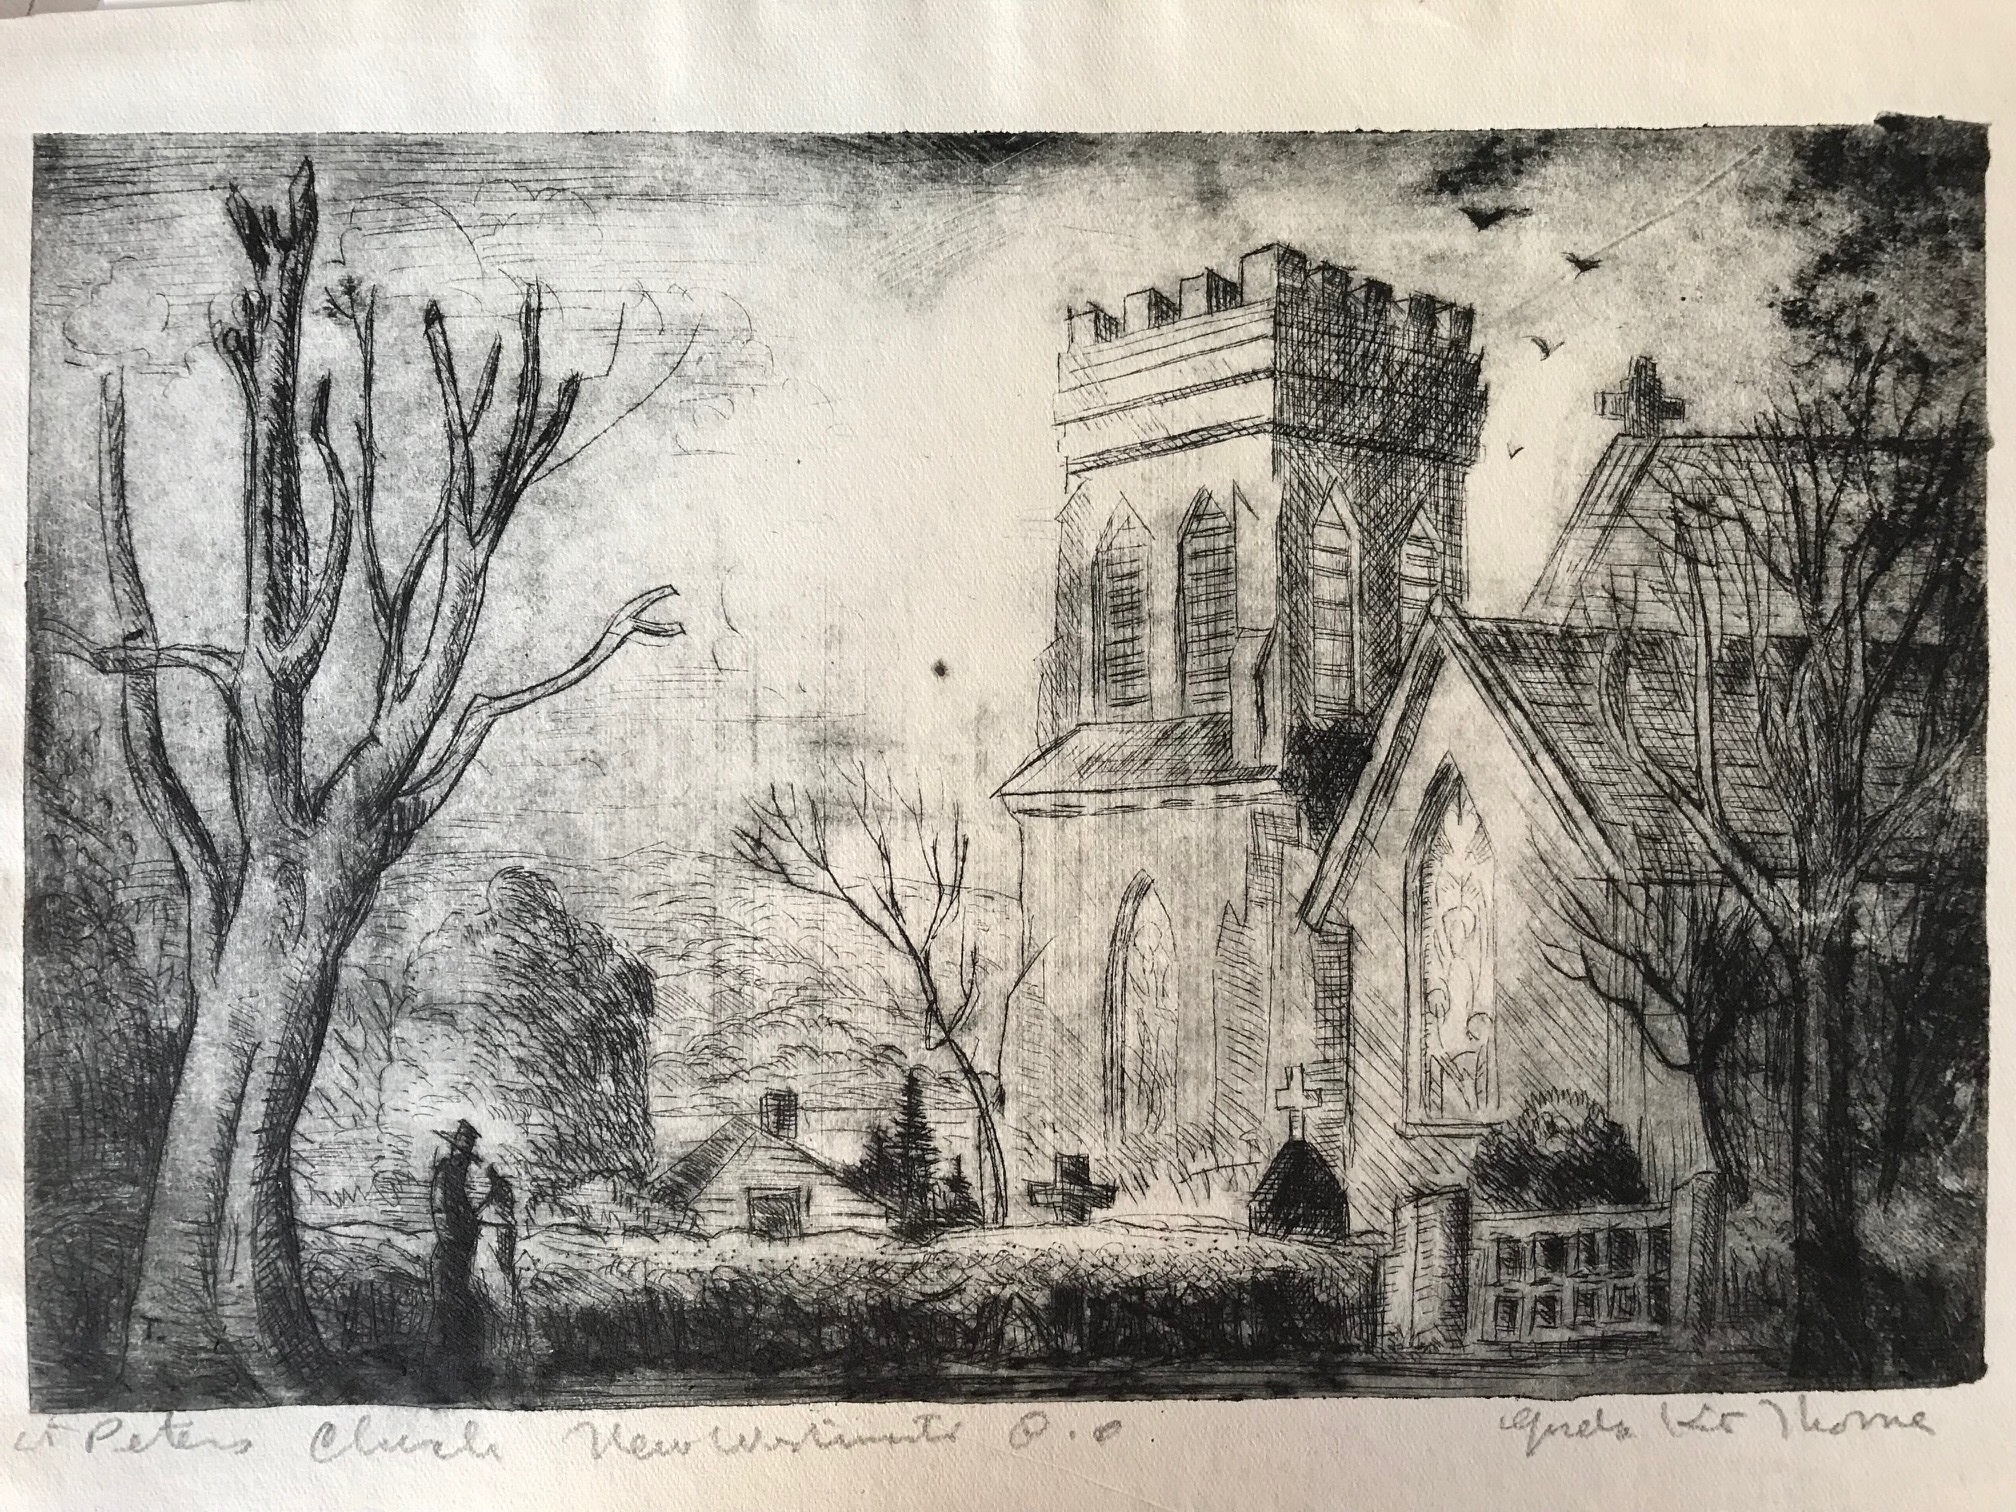 Gordon Kit Thorne, St. Peter’s Church New Westminster, B.C.